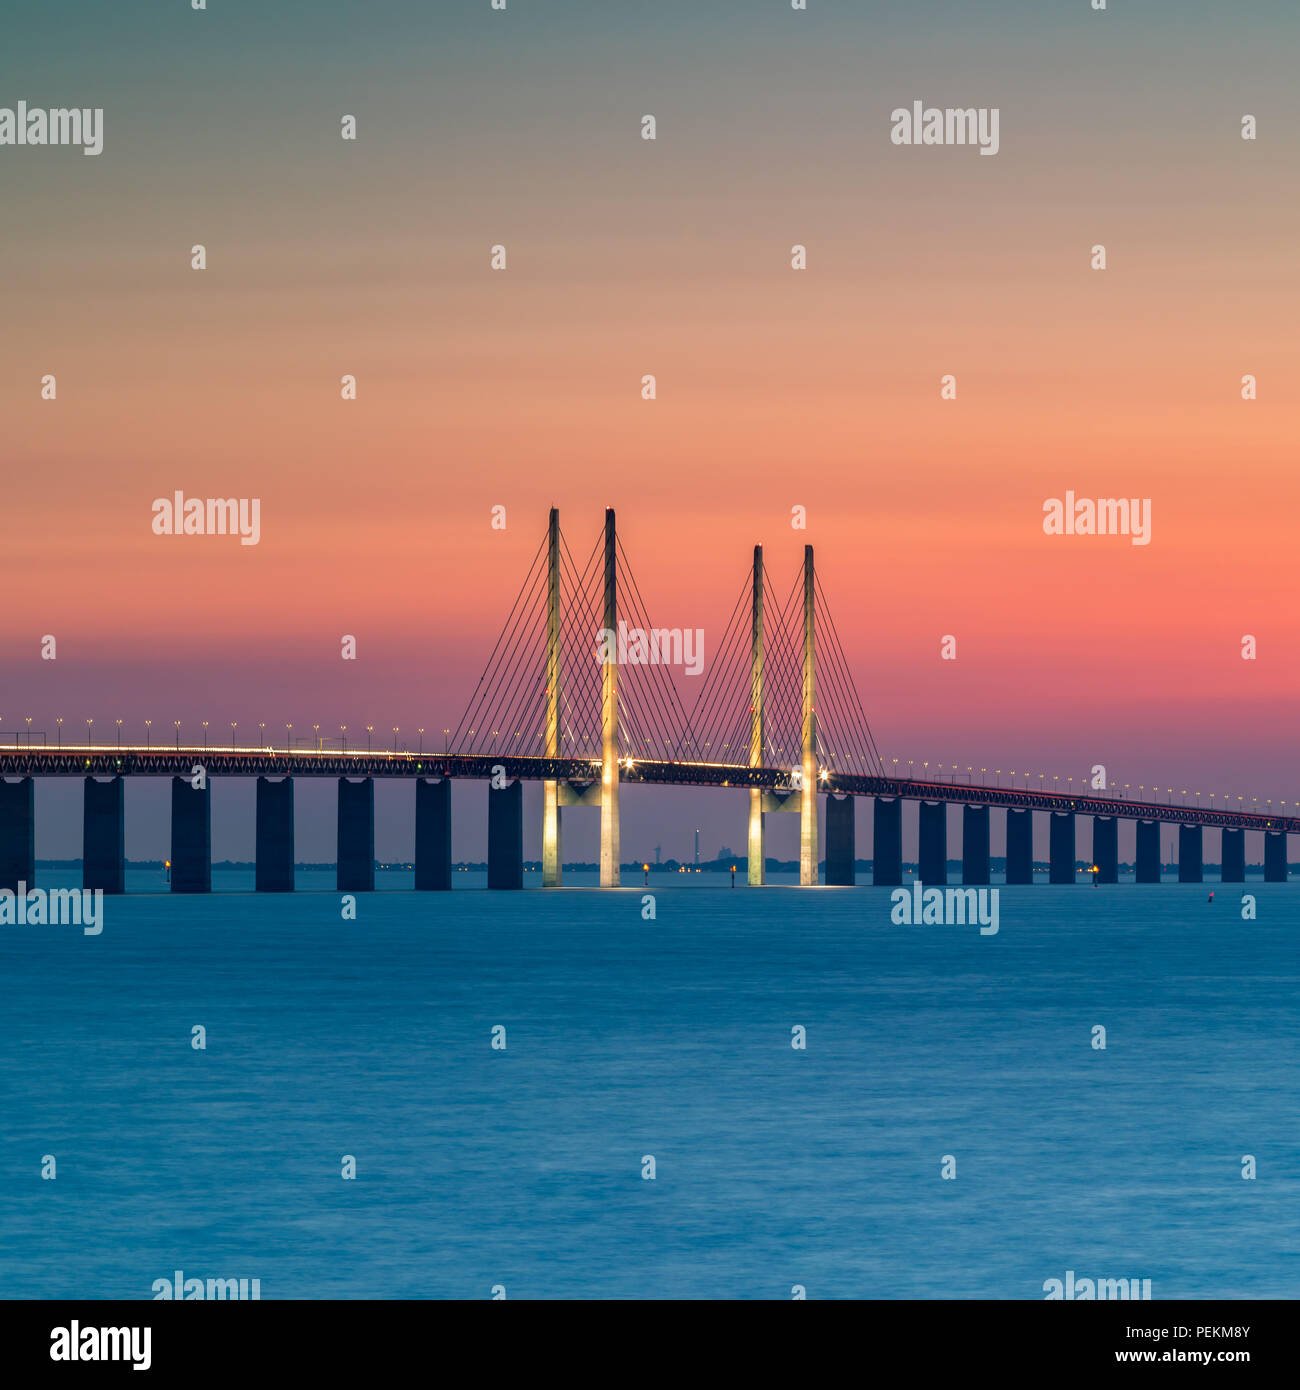 Die Øresund-Brücke ist die längste kombinierte Straßen- und Eisenbahnbrücke in Europa und verbindet zwei größere Städte: Kopenhagen und Malmö. Stockfoto